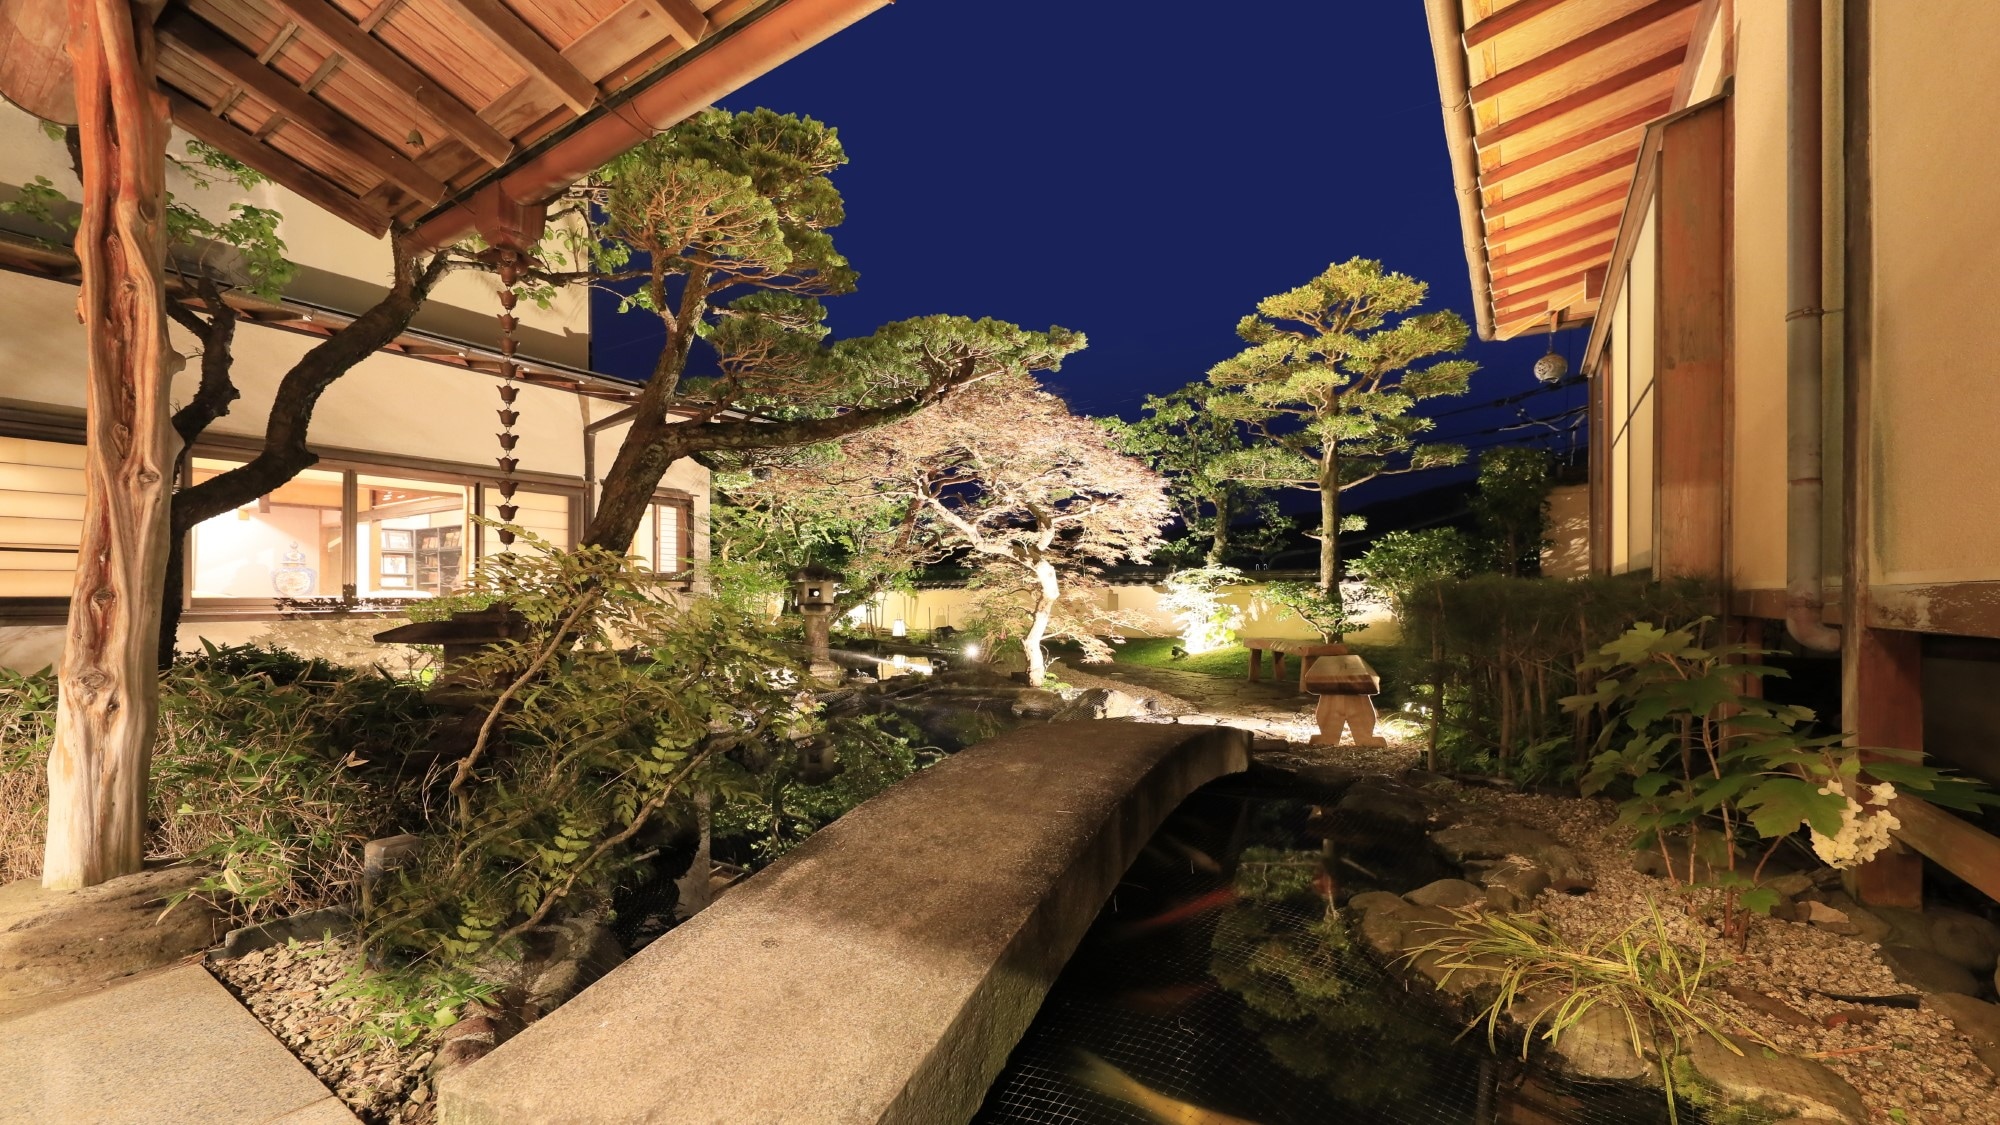 Facilities◆Japanese garden